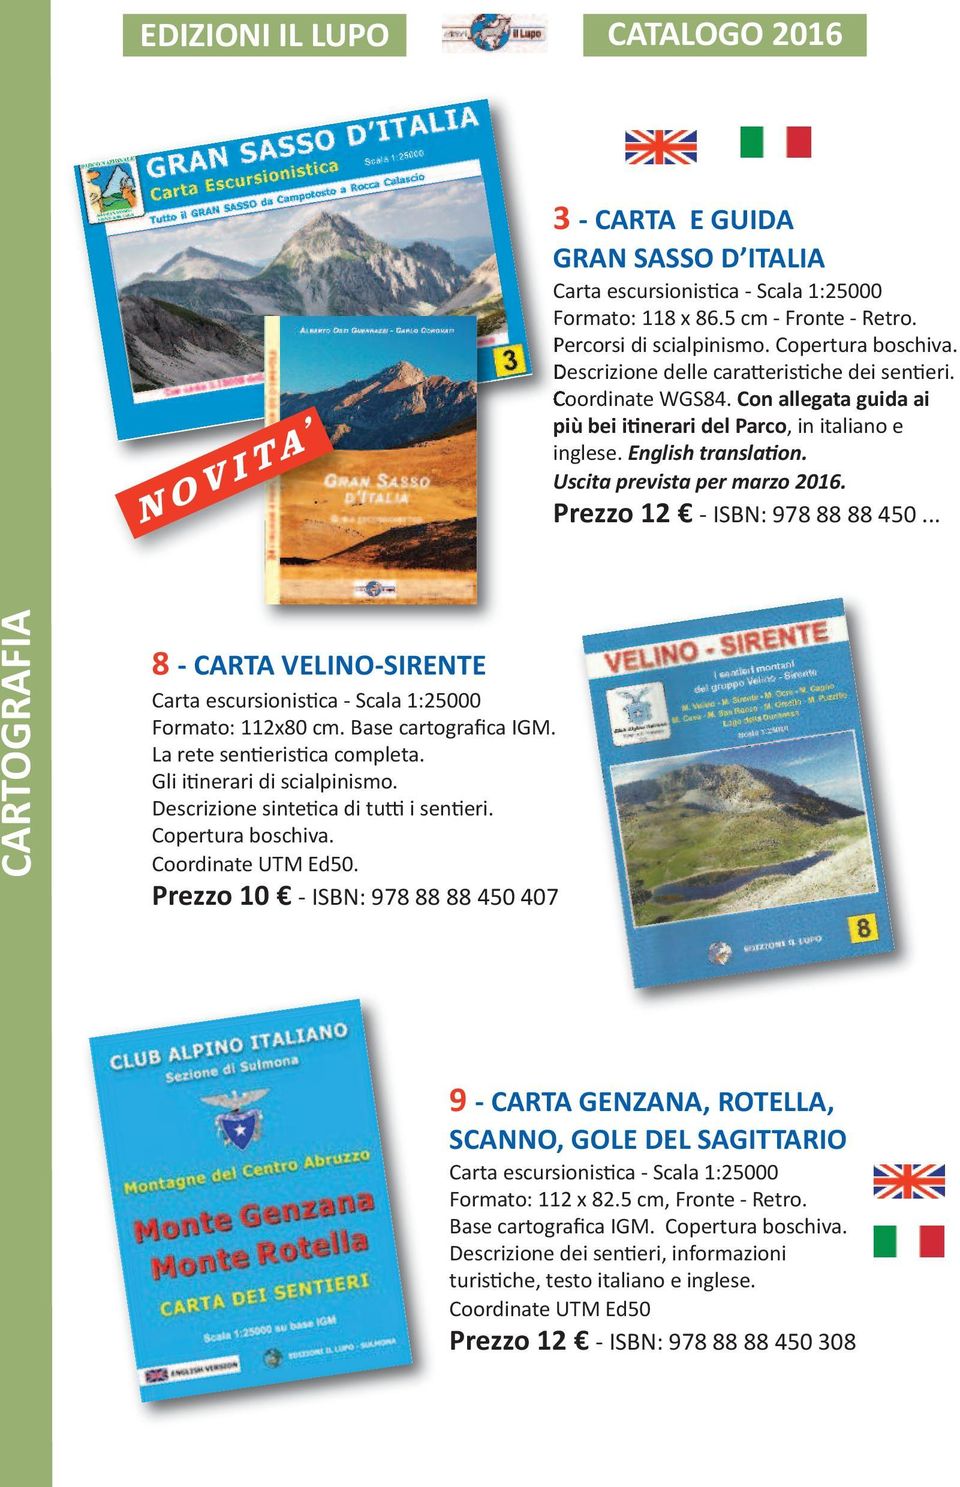 Prezzo 12 - ISBN: 978 88 88 450... 8 - CARTA VELINO-SIRENTE Formato: 112x80 cm. Base cartografica IGM. La rete sentieristica completa. Gli itinerari di scialpinismo.